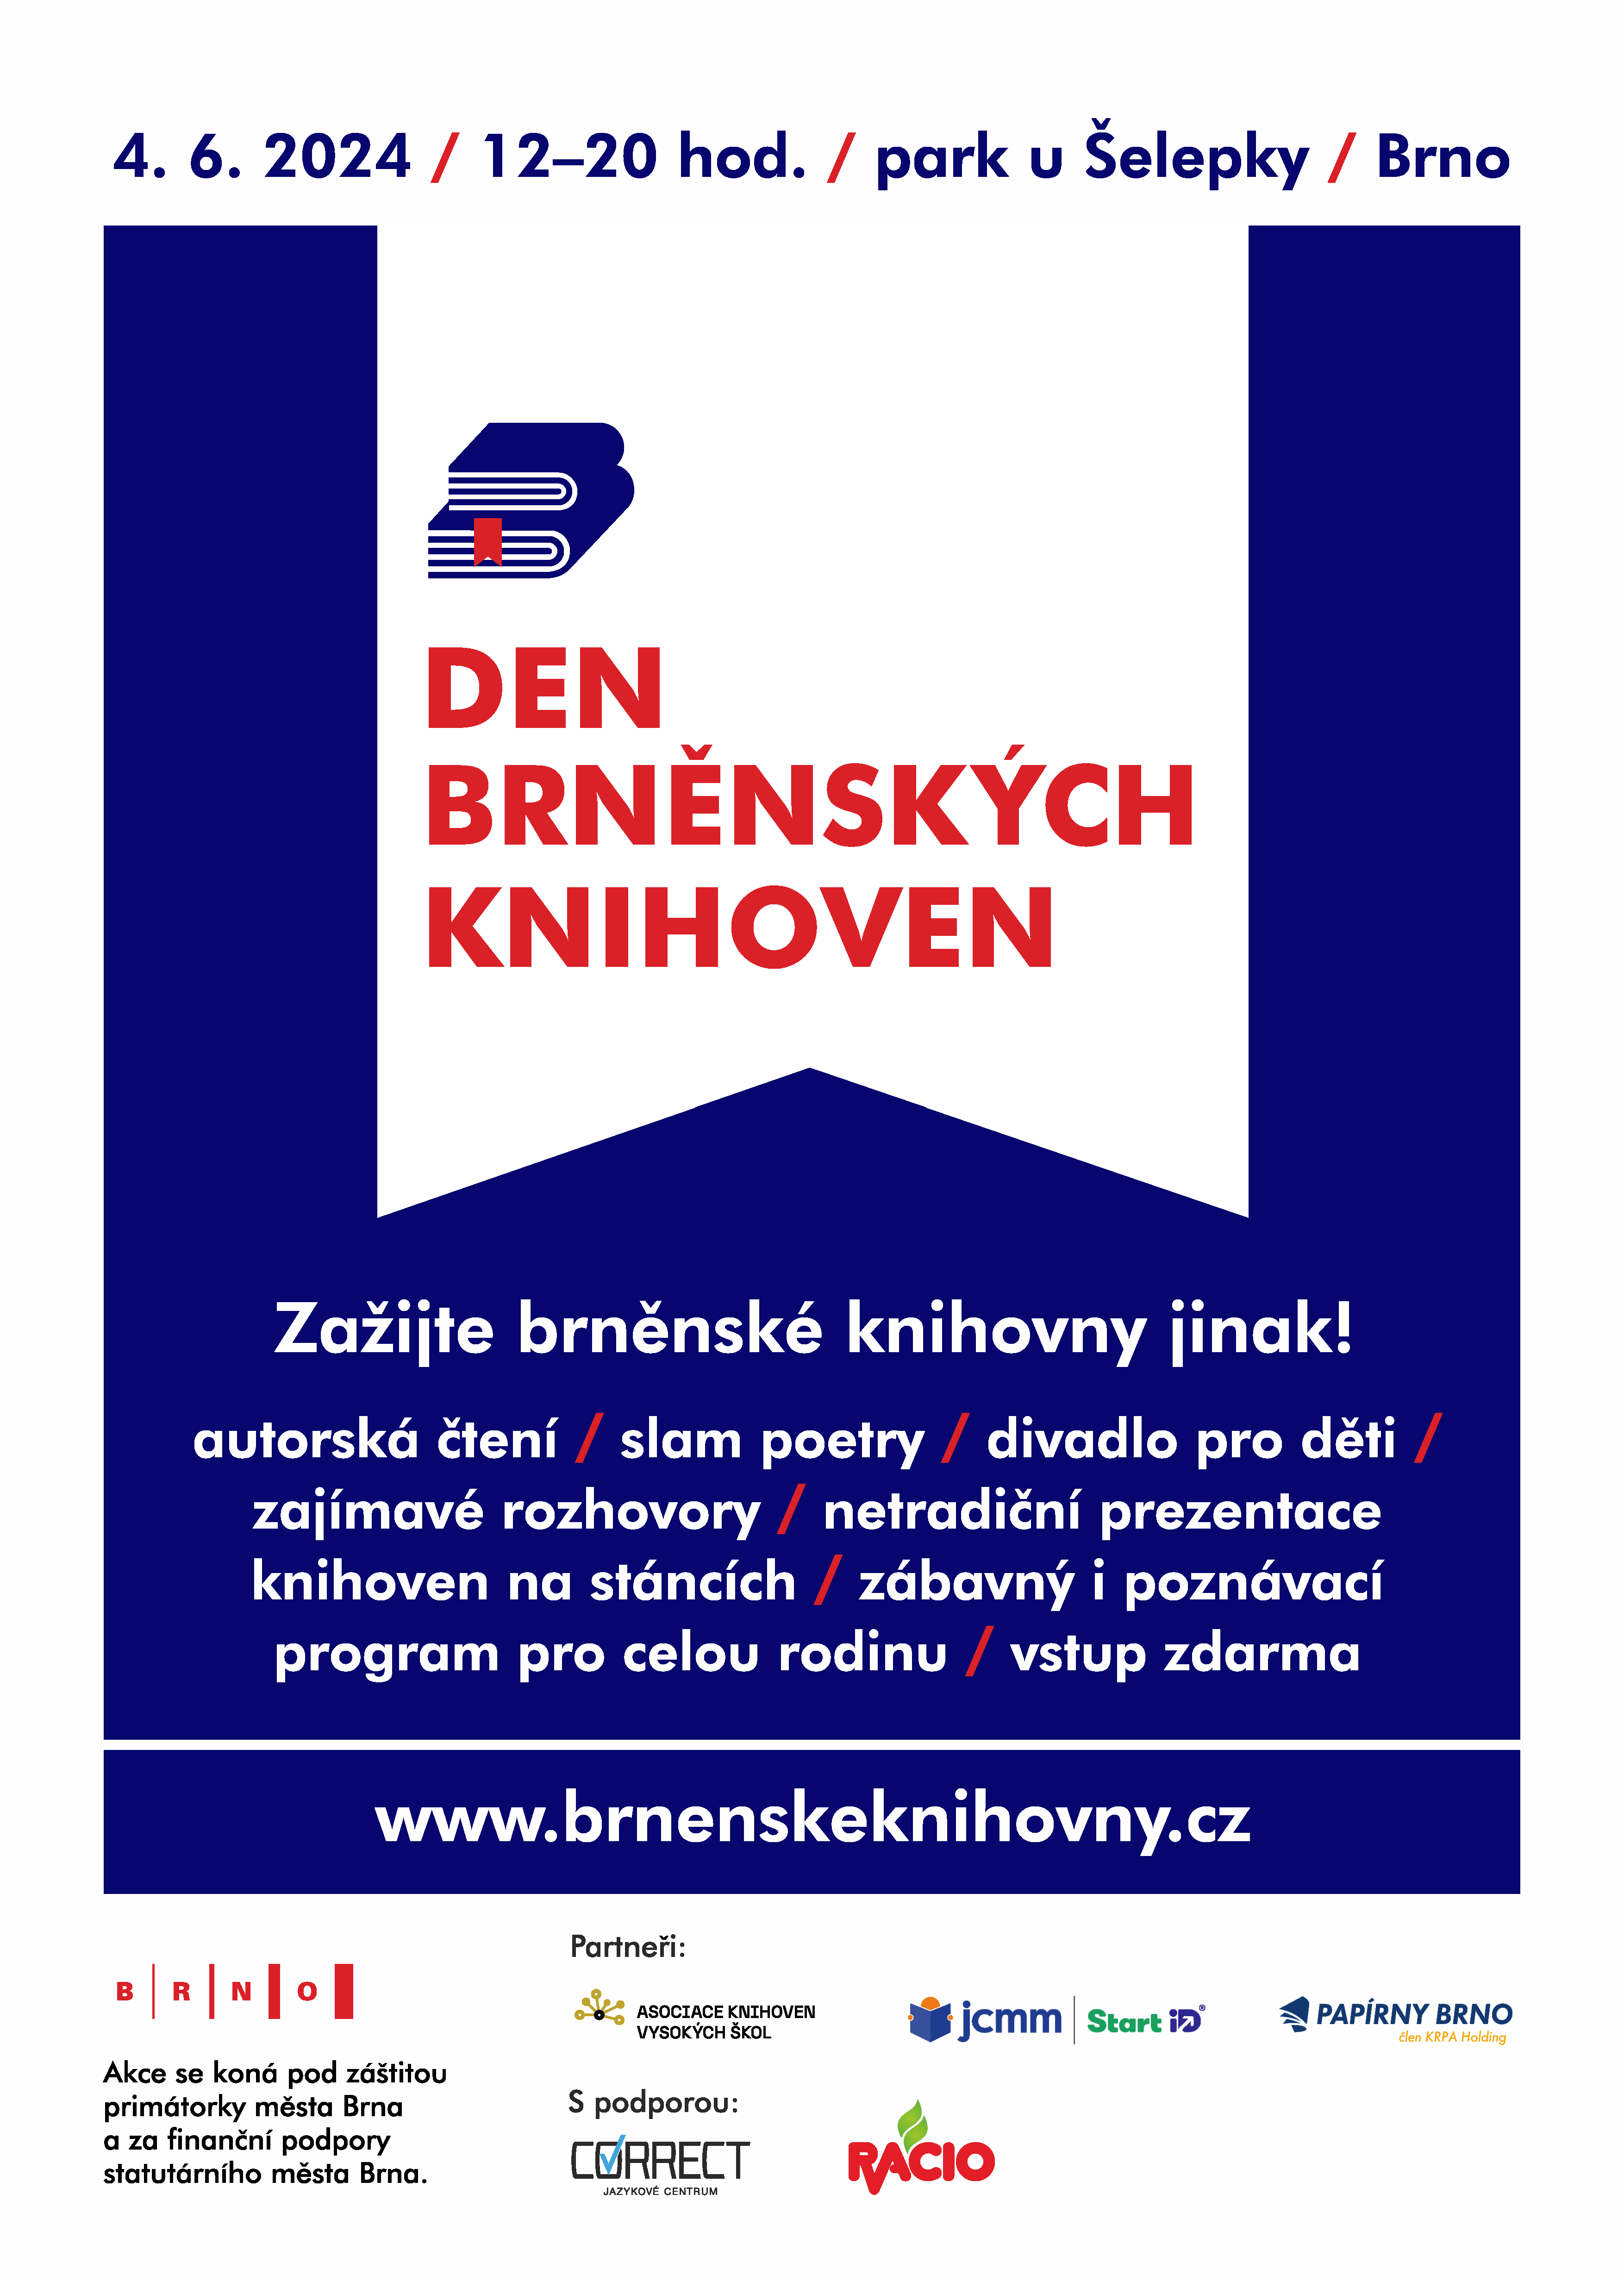 Pozvánka na Den brněnských knihoven 4. června 2024, 12-20 h park u Šelepky.